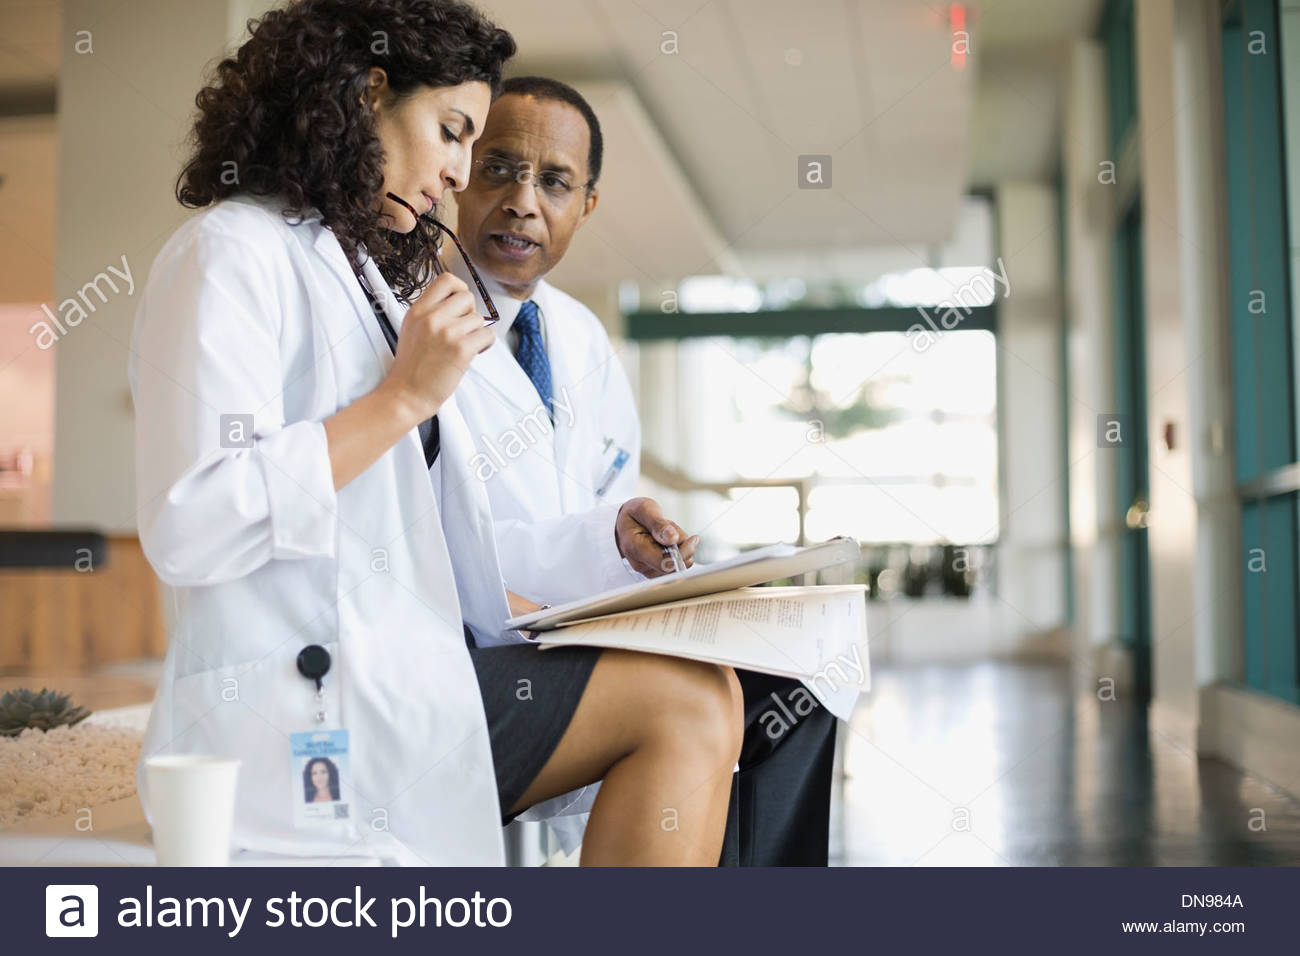 Los médicos revisando informes médicos Foto de stock